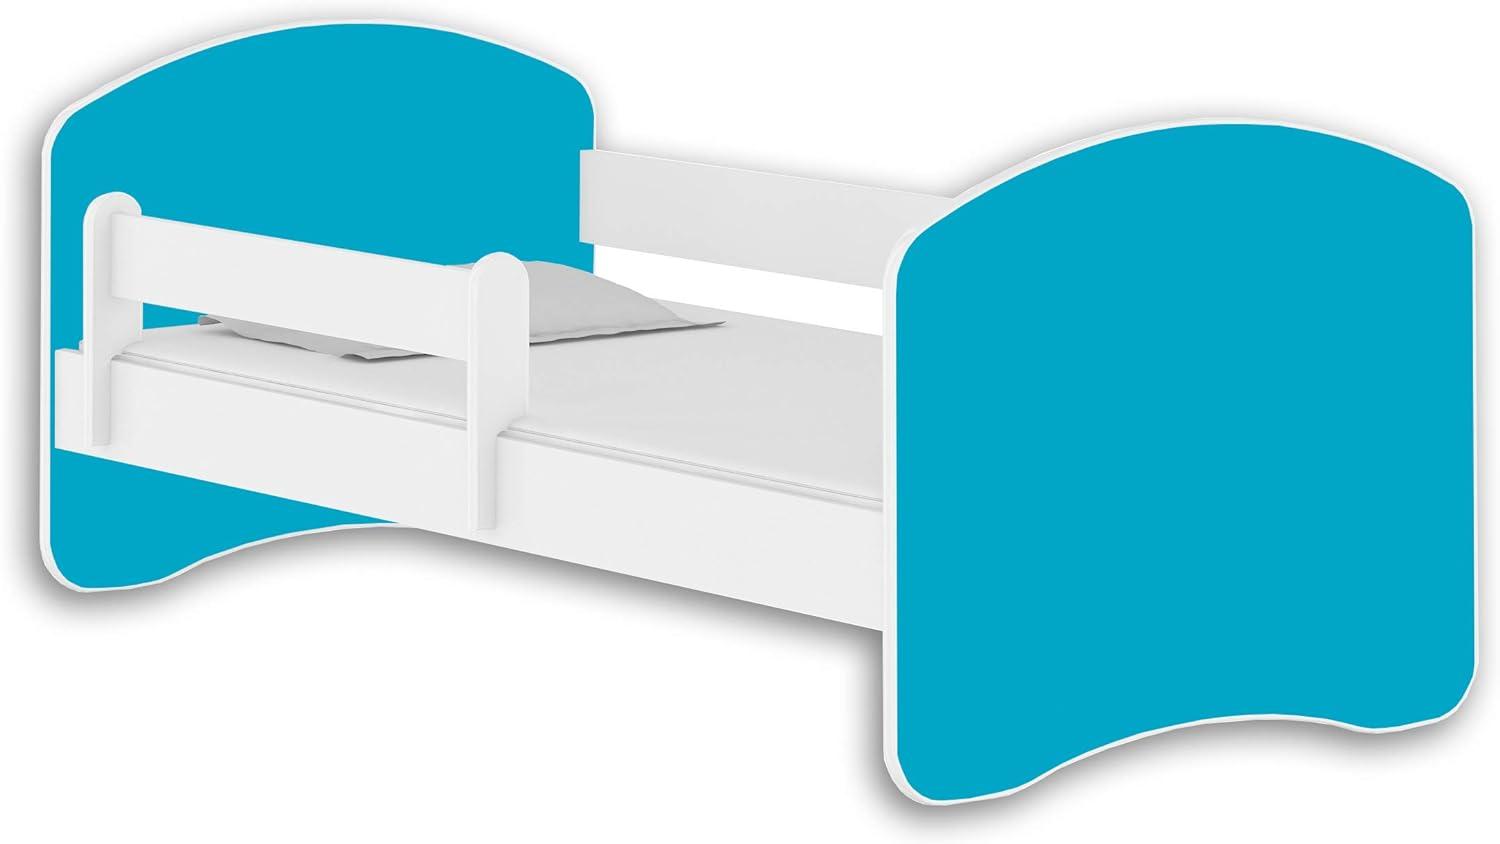 Jugendbett Kinderbett mit einer Schublade mit Rausfallschutz und Matratze Weiß ACMA II 140 160 180 (140x70 cm, Weiß - Blau) Bild 1